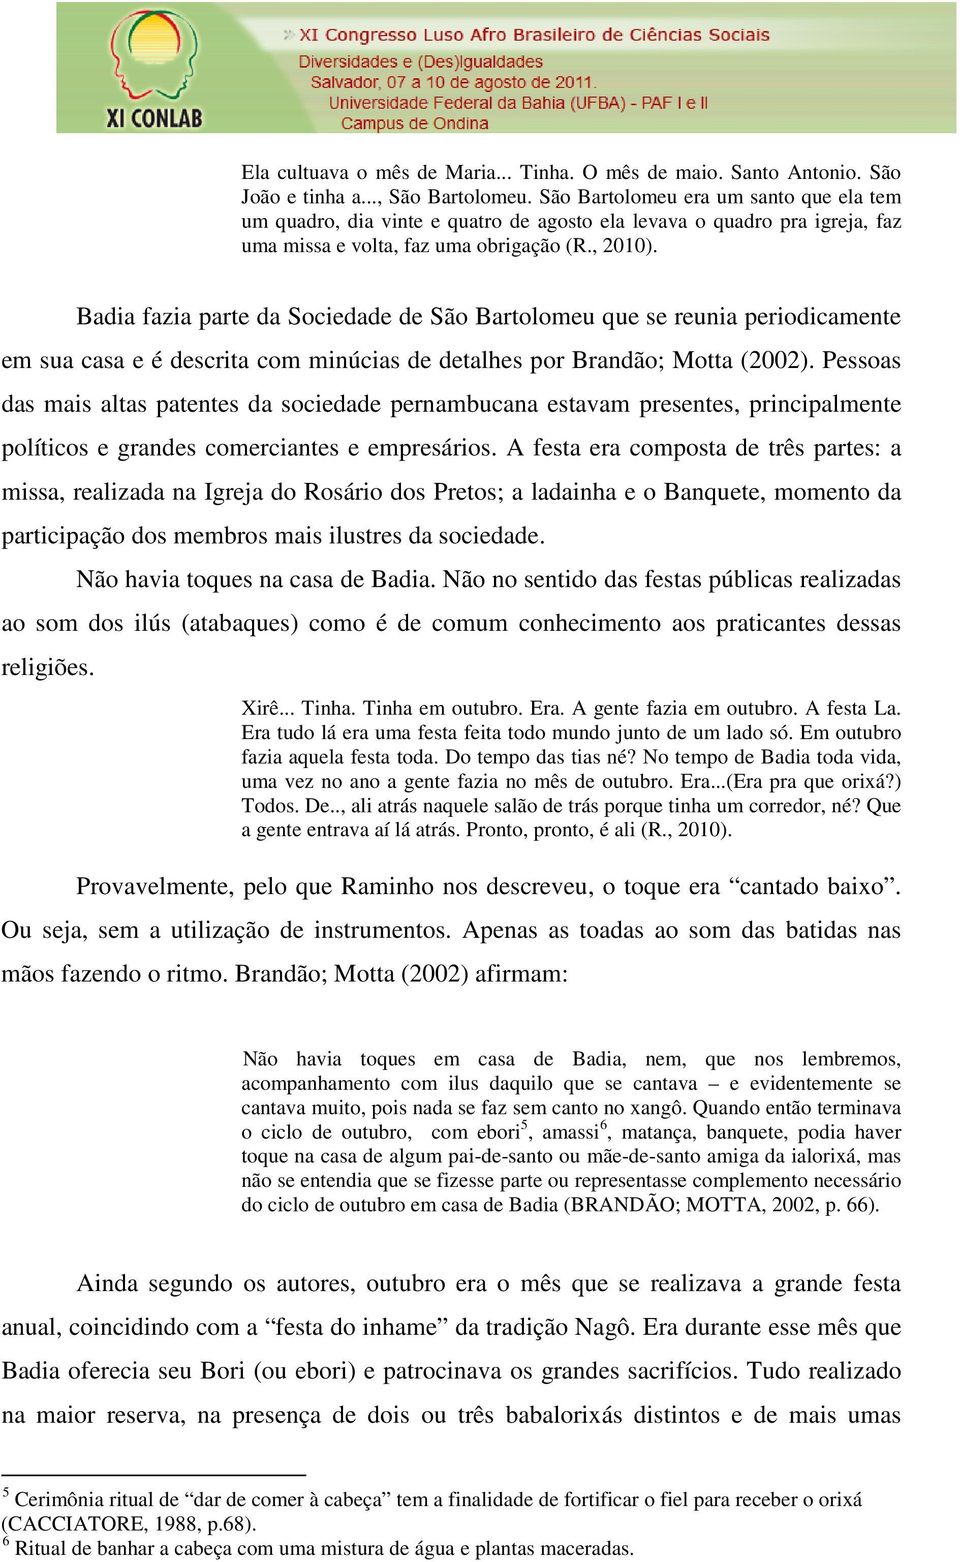 Badia fazia parte da Sociedade de São Bartolomeu que se reunia periodicamente em sua casa e é descrita com minúcias de detalhes por Brandão; Motta (2002).